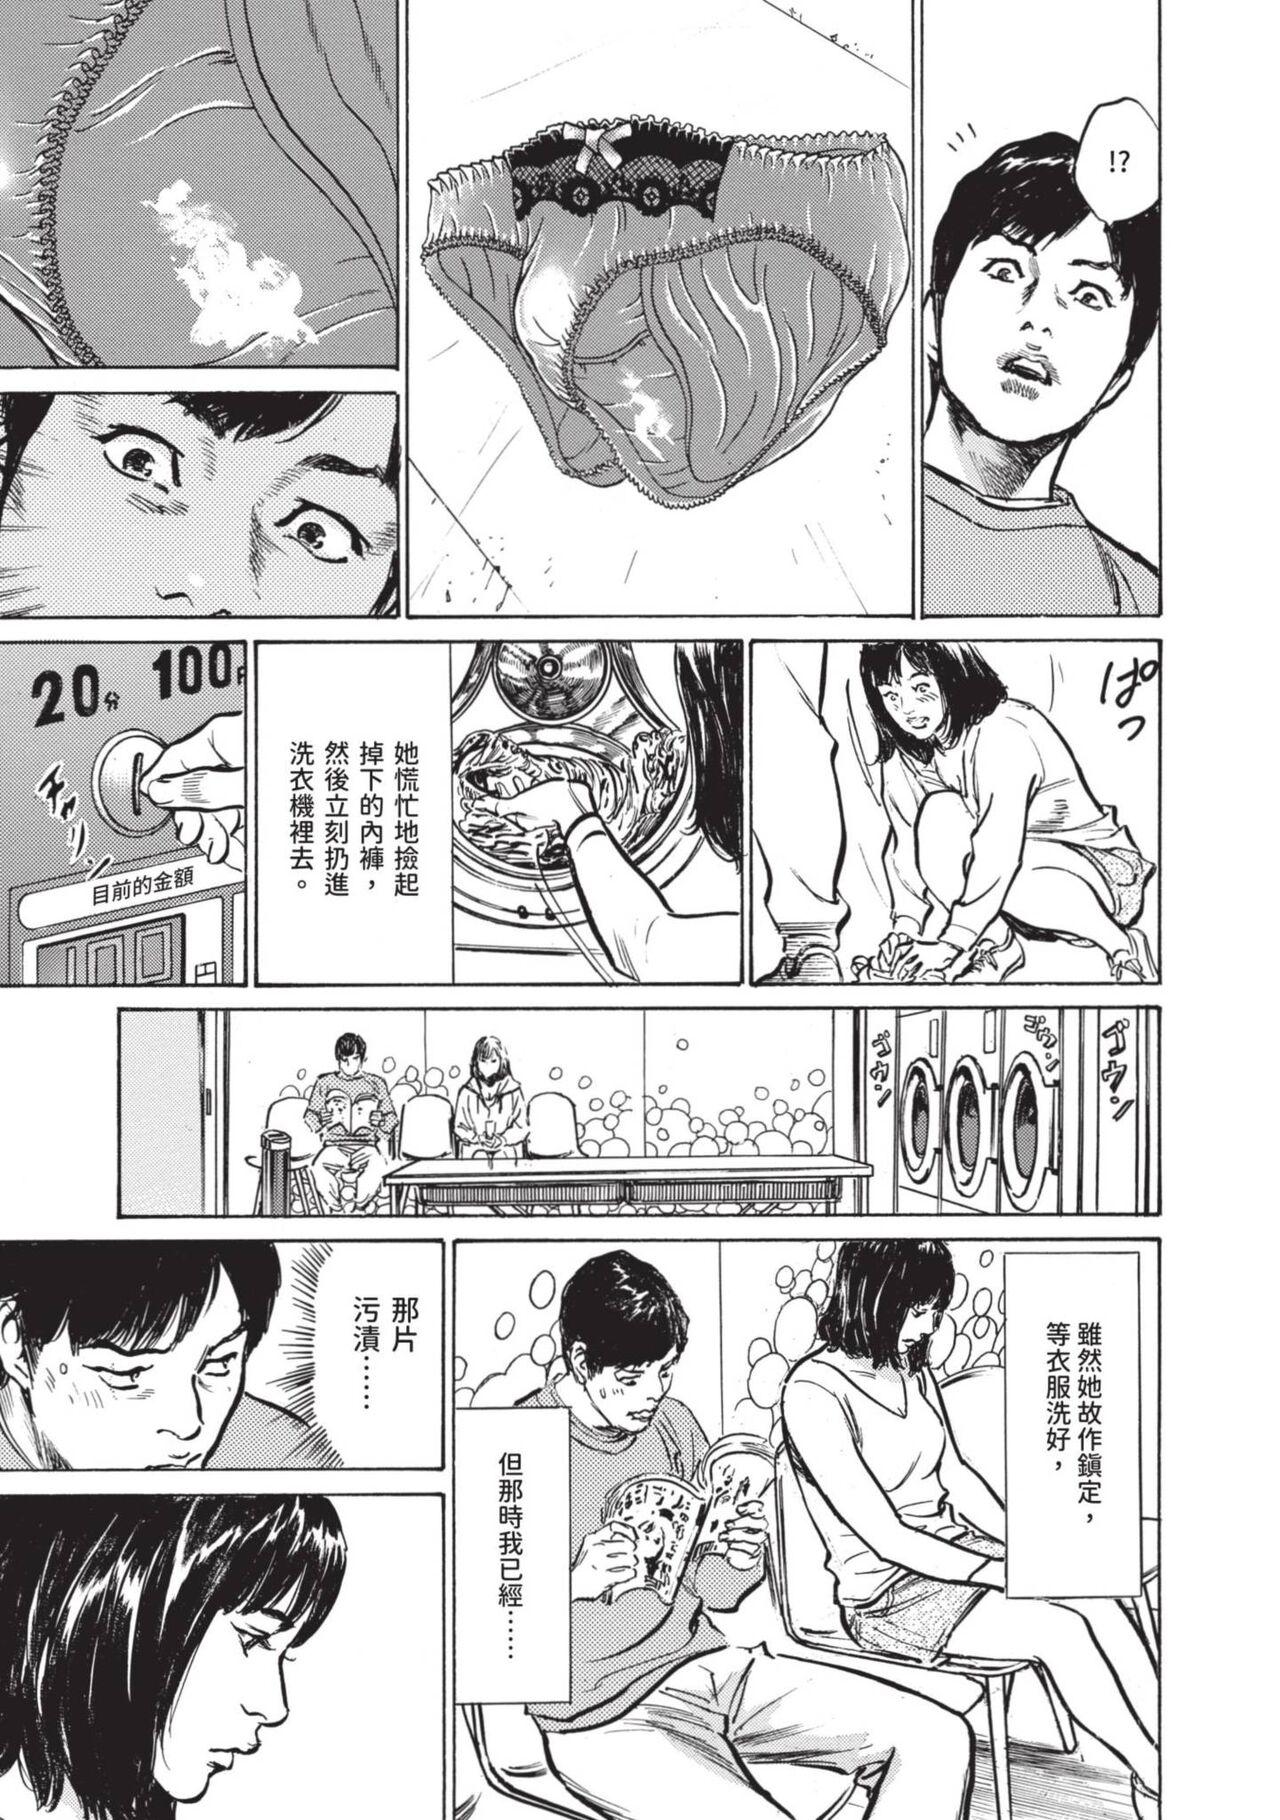 Stroking Hontou ni Atta Omowazu Zawatsuku Totteoki no Hanashi | 實際存在,會讓人心頭一震的真實故事 Spa - Page 11